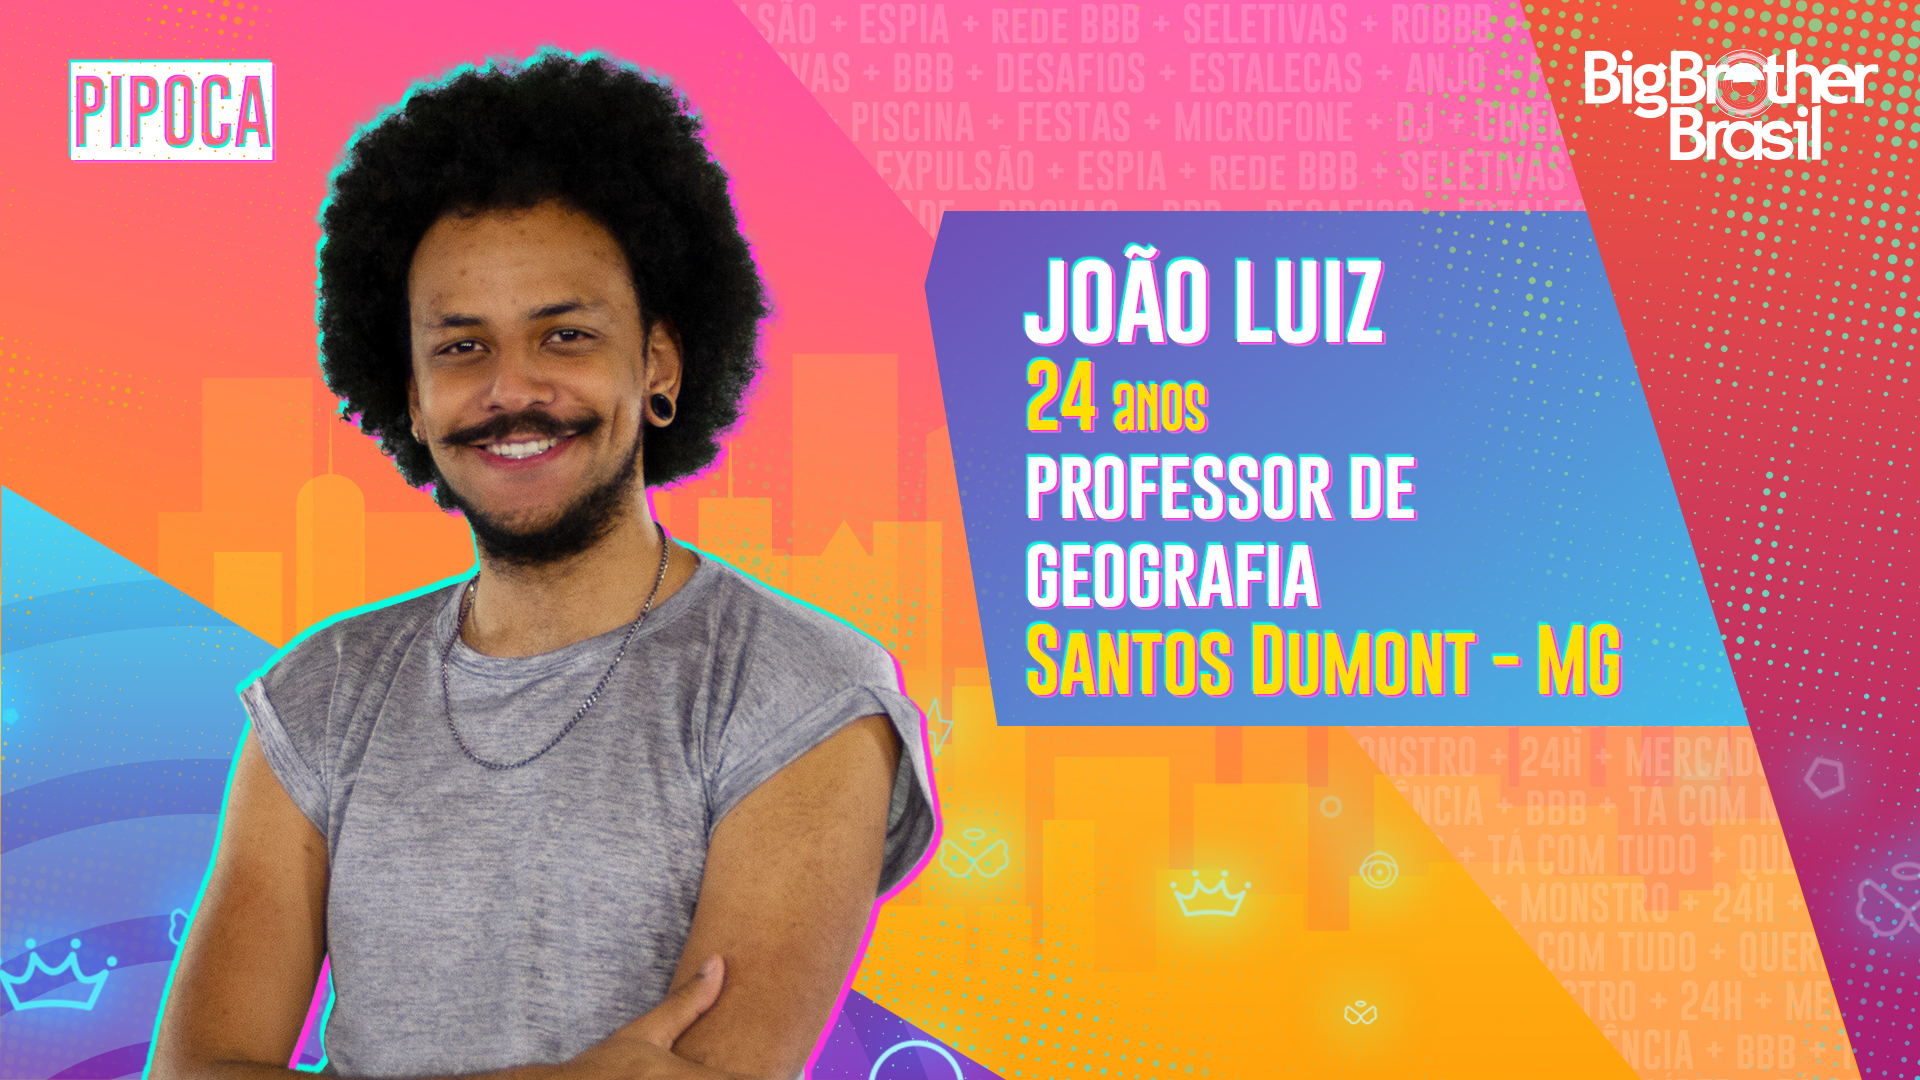 João Luiz BBB 21